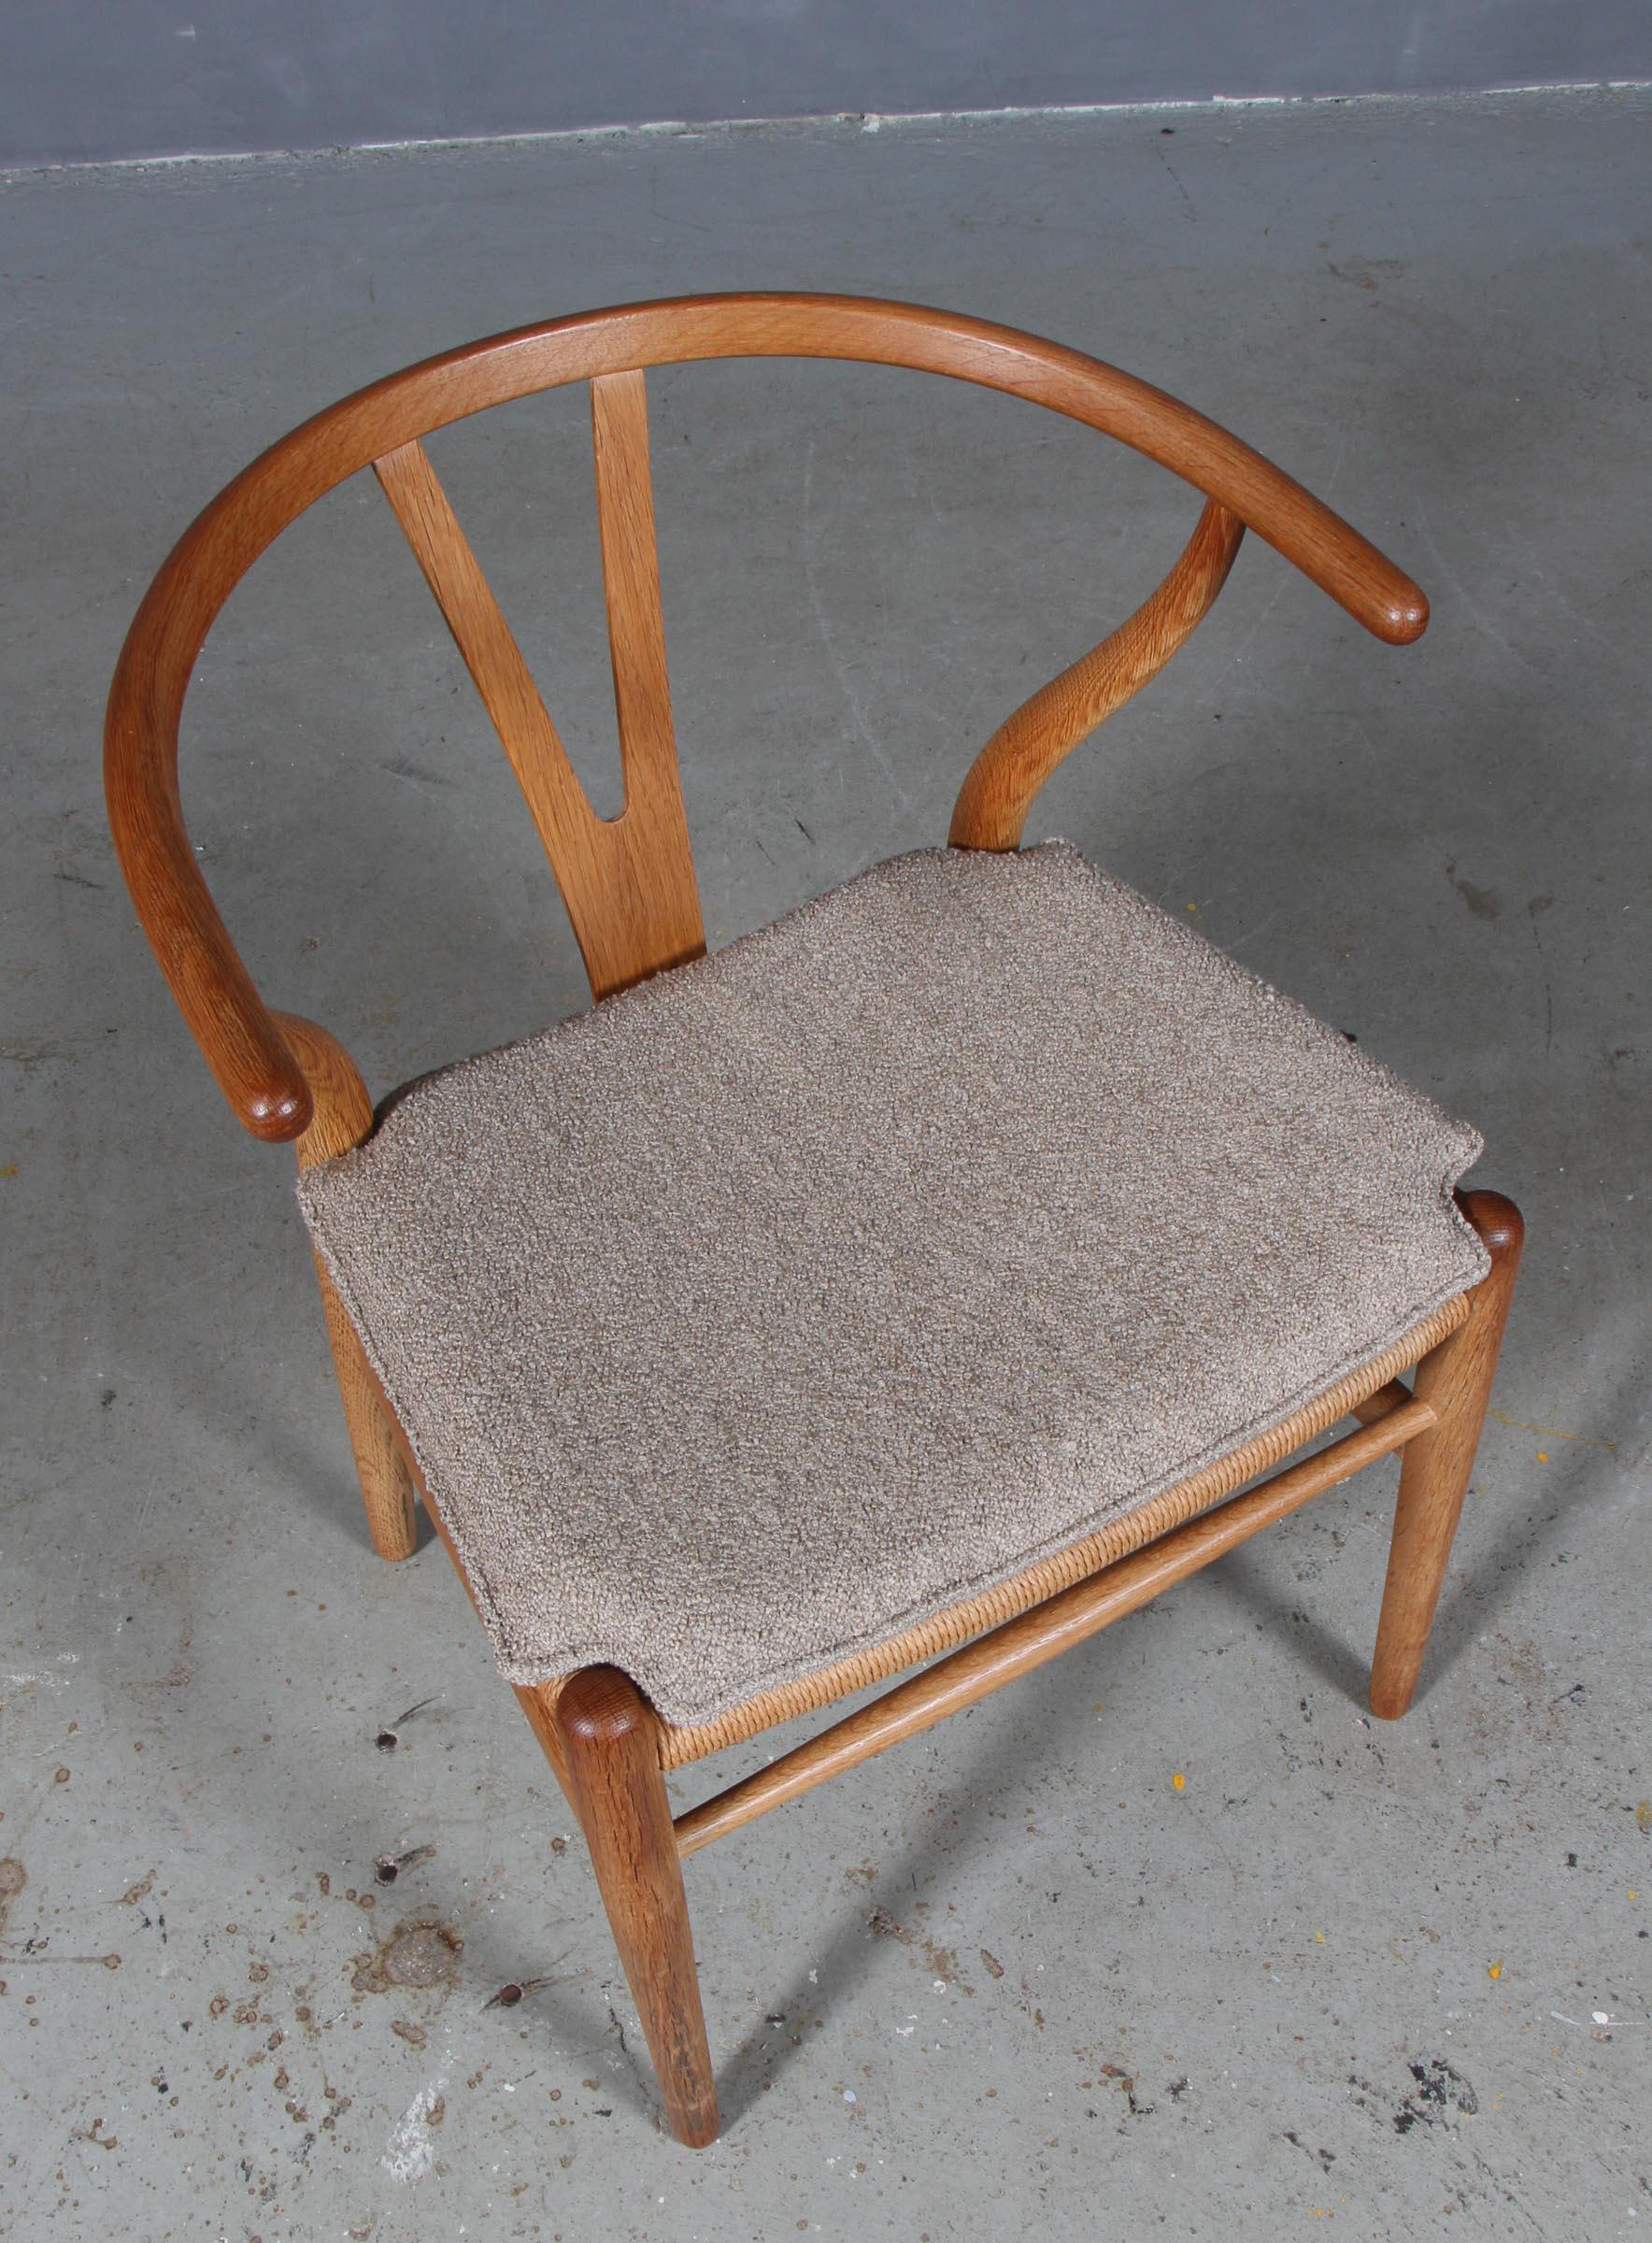 Hans J. Wegner Kissen für Querlenkerstuhl Modell CH24.

Hergestellt aus cognacfarbenem reinem Anilinleder und hochwertigem Schaumstoff.

Nur das Kissen, nicht der Stuhl.